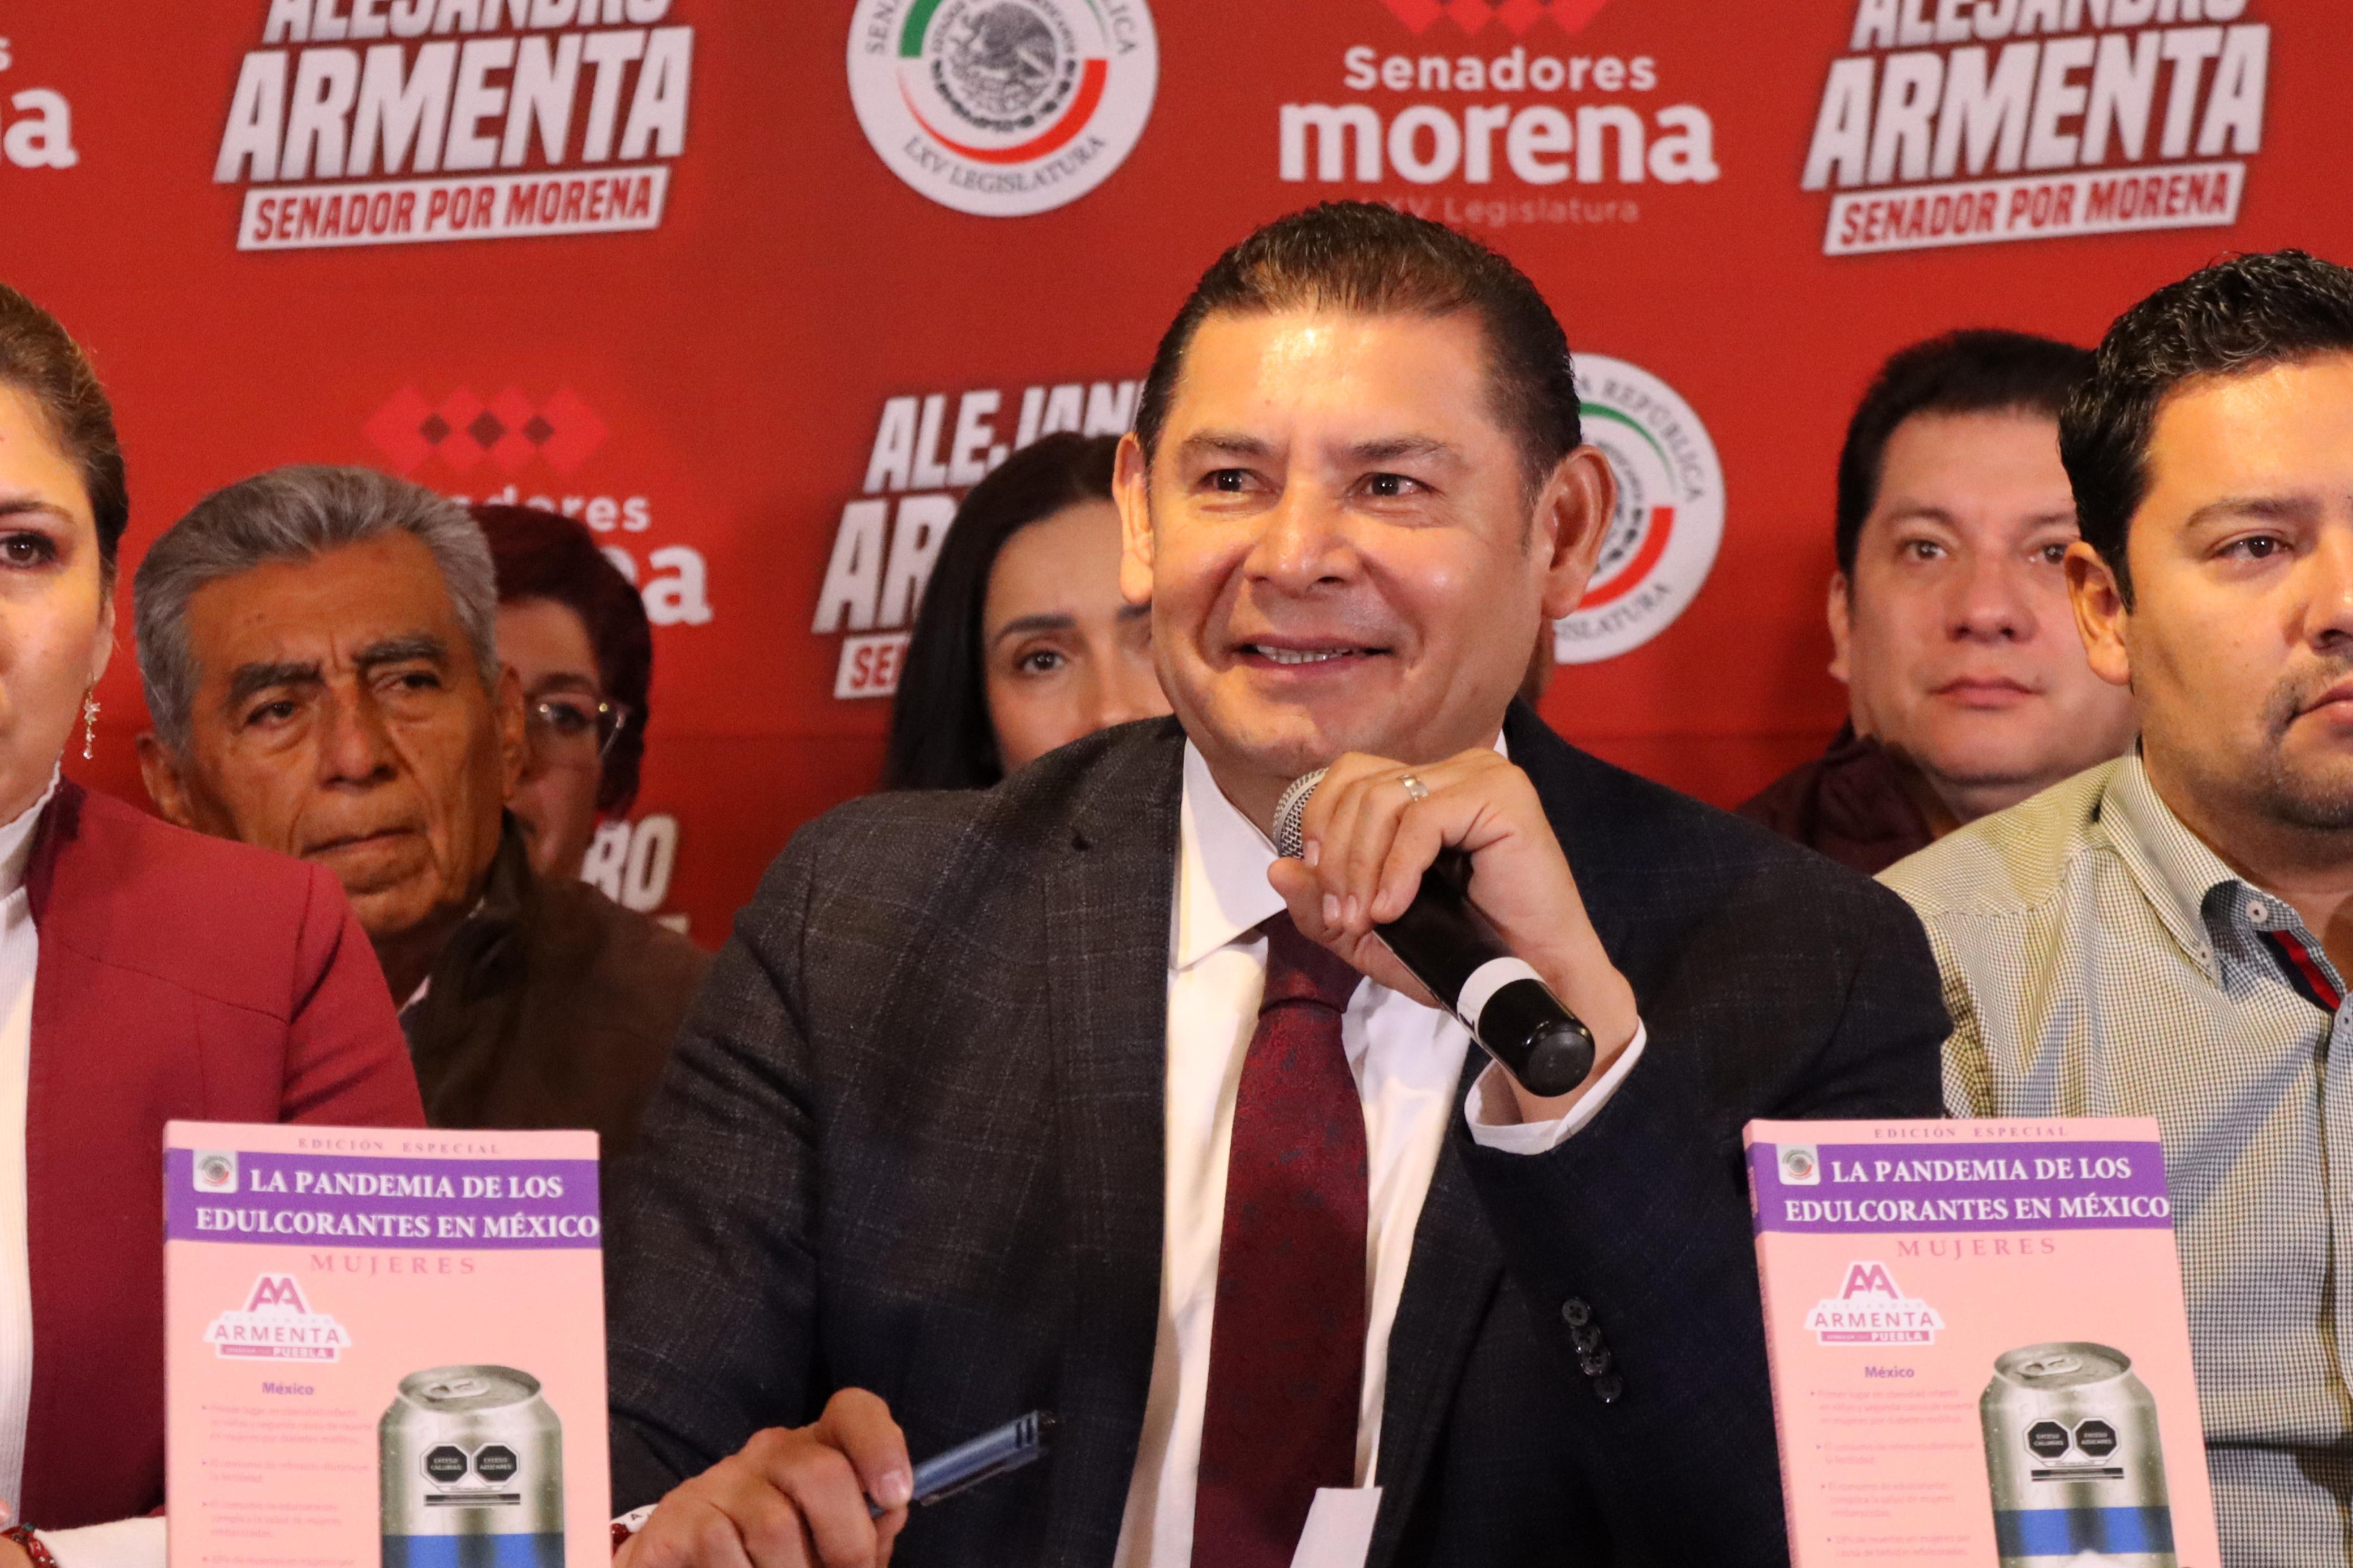 La iniciativa de revocación de mandato en México liderada por el senador Alejandro Armenta, un paso crucial hacia una democracia más transparente y participativa